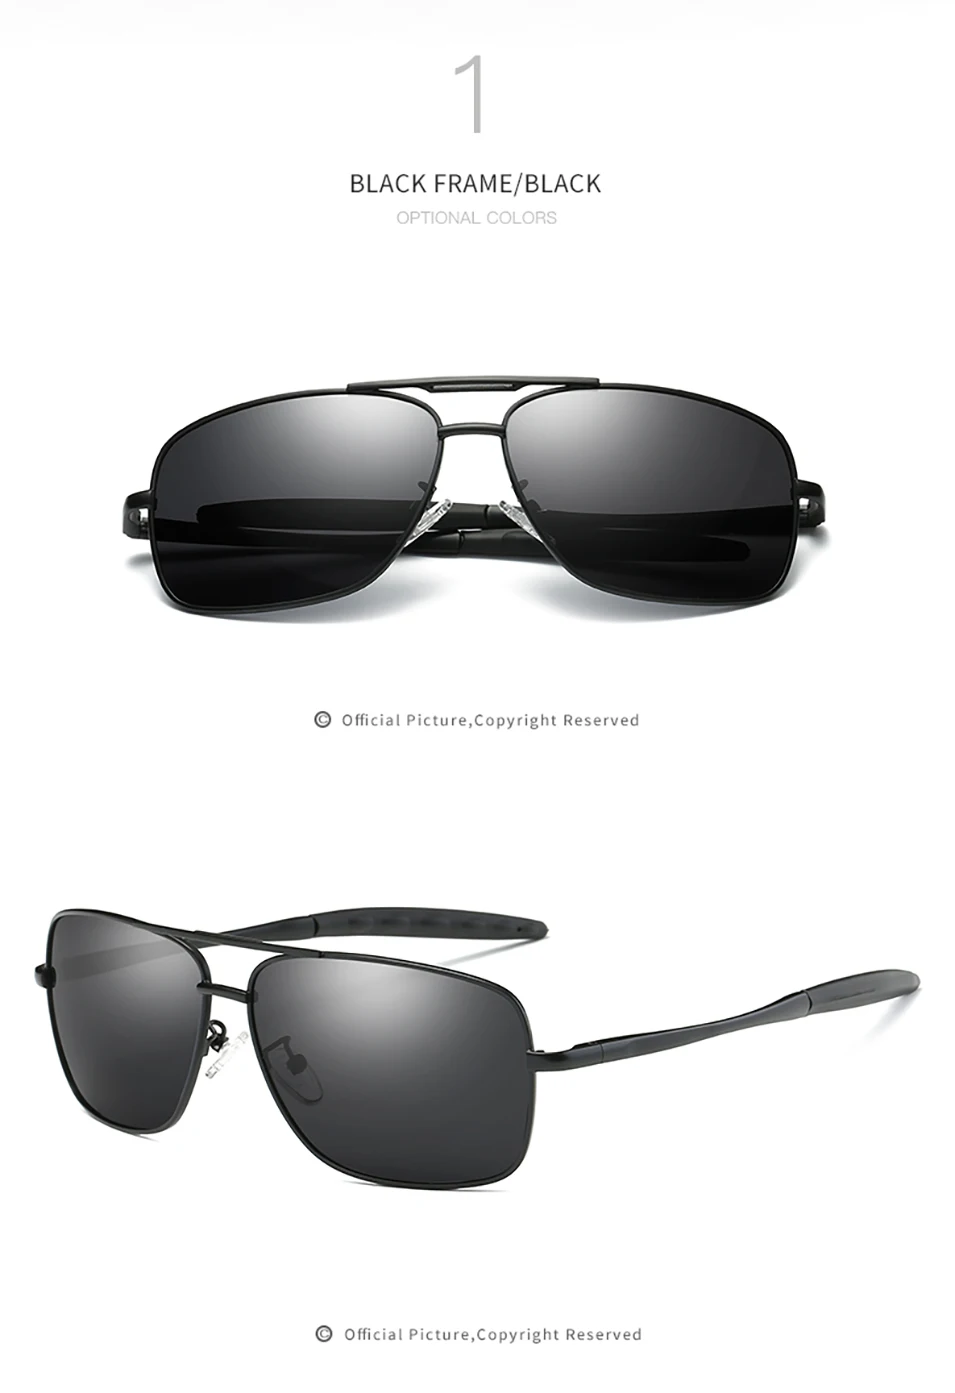 Мужские поляризованные солнцезащитные очки водительские оттенки мужской классический магический куб водительские солнцезащитные очки Металлические солнцезащитные очки оптика с защитой от ультрафиолетовых лучей очки